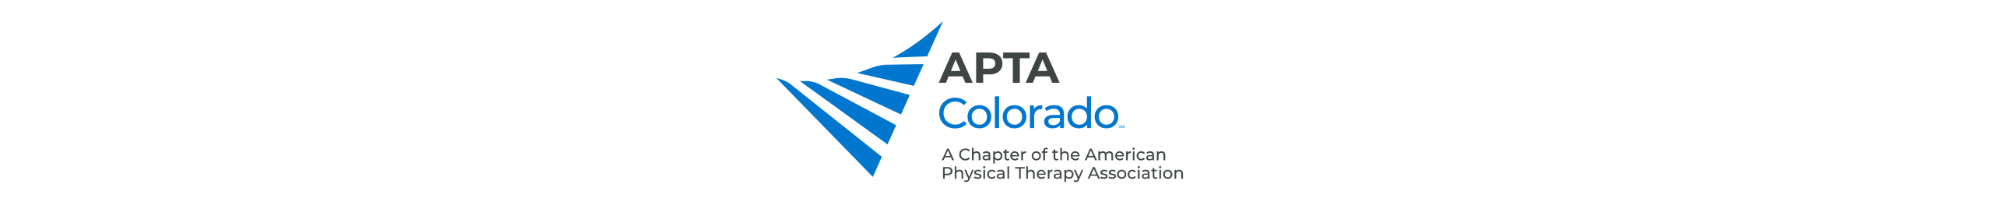 APTA Colorado Events